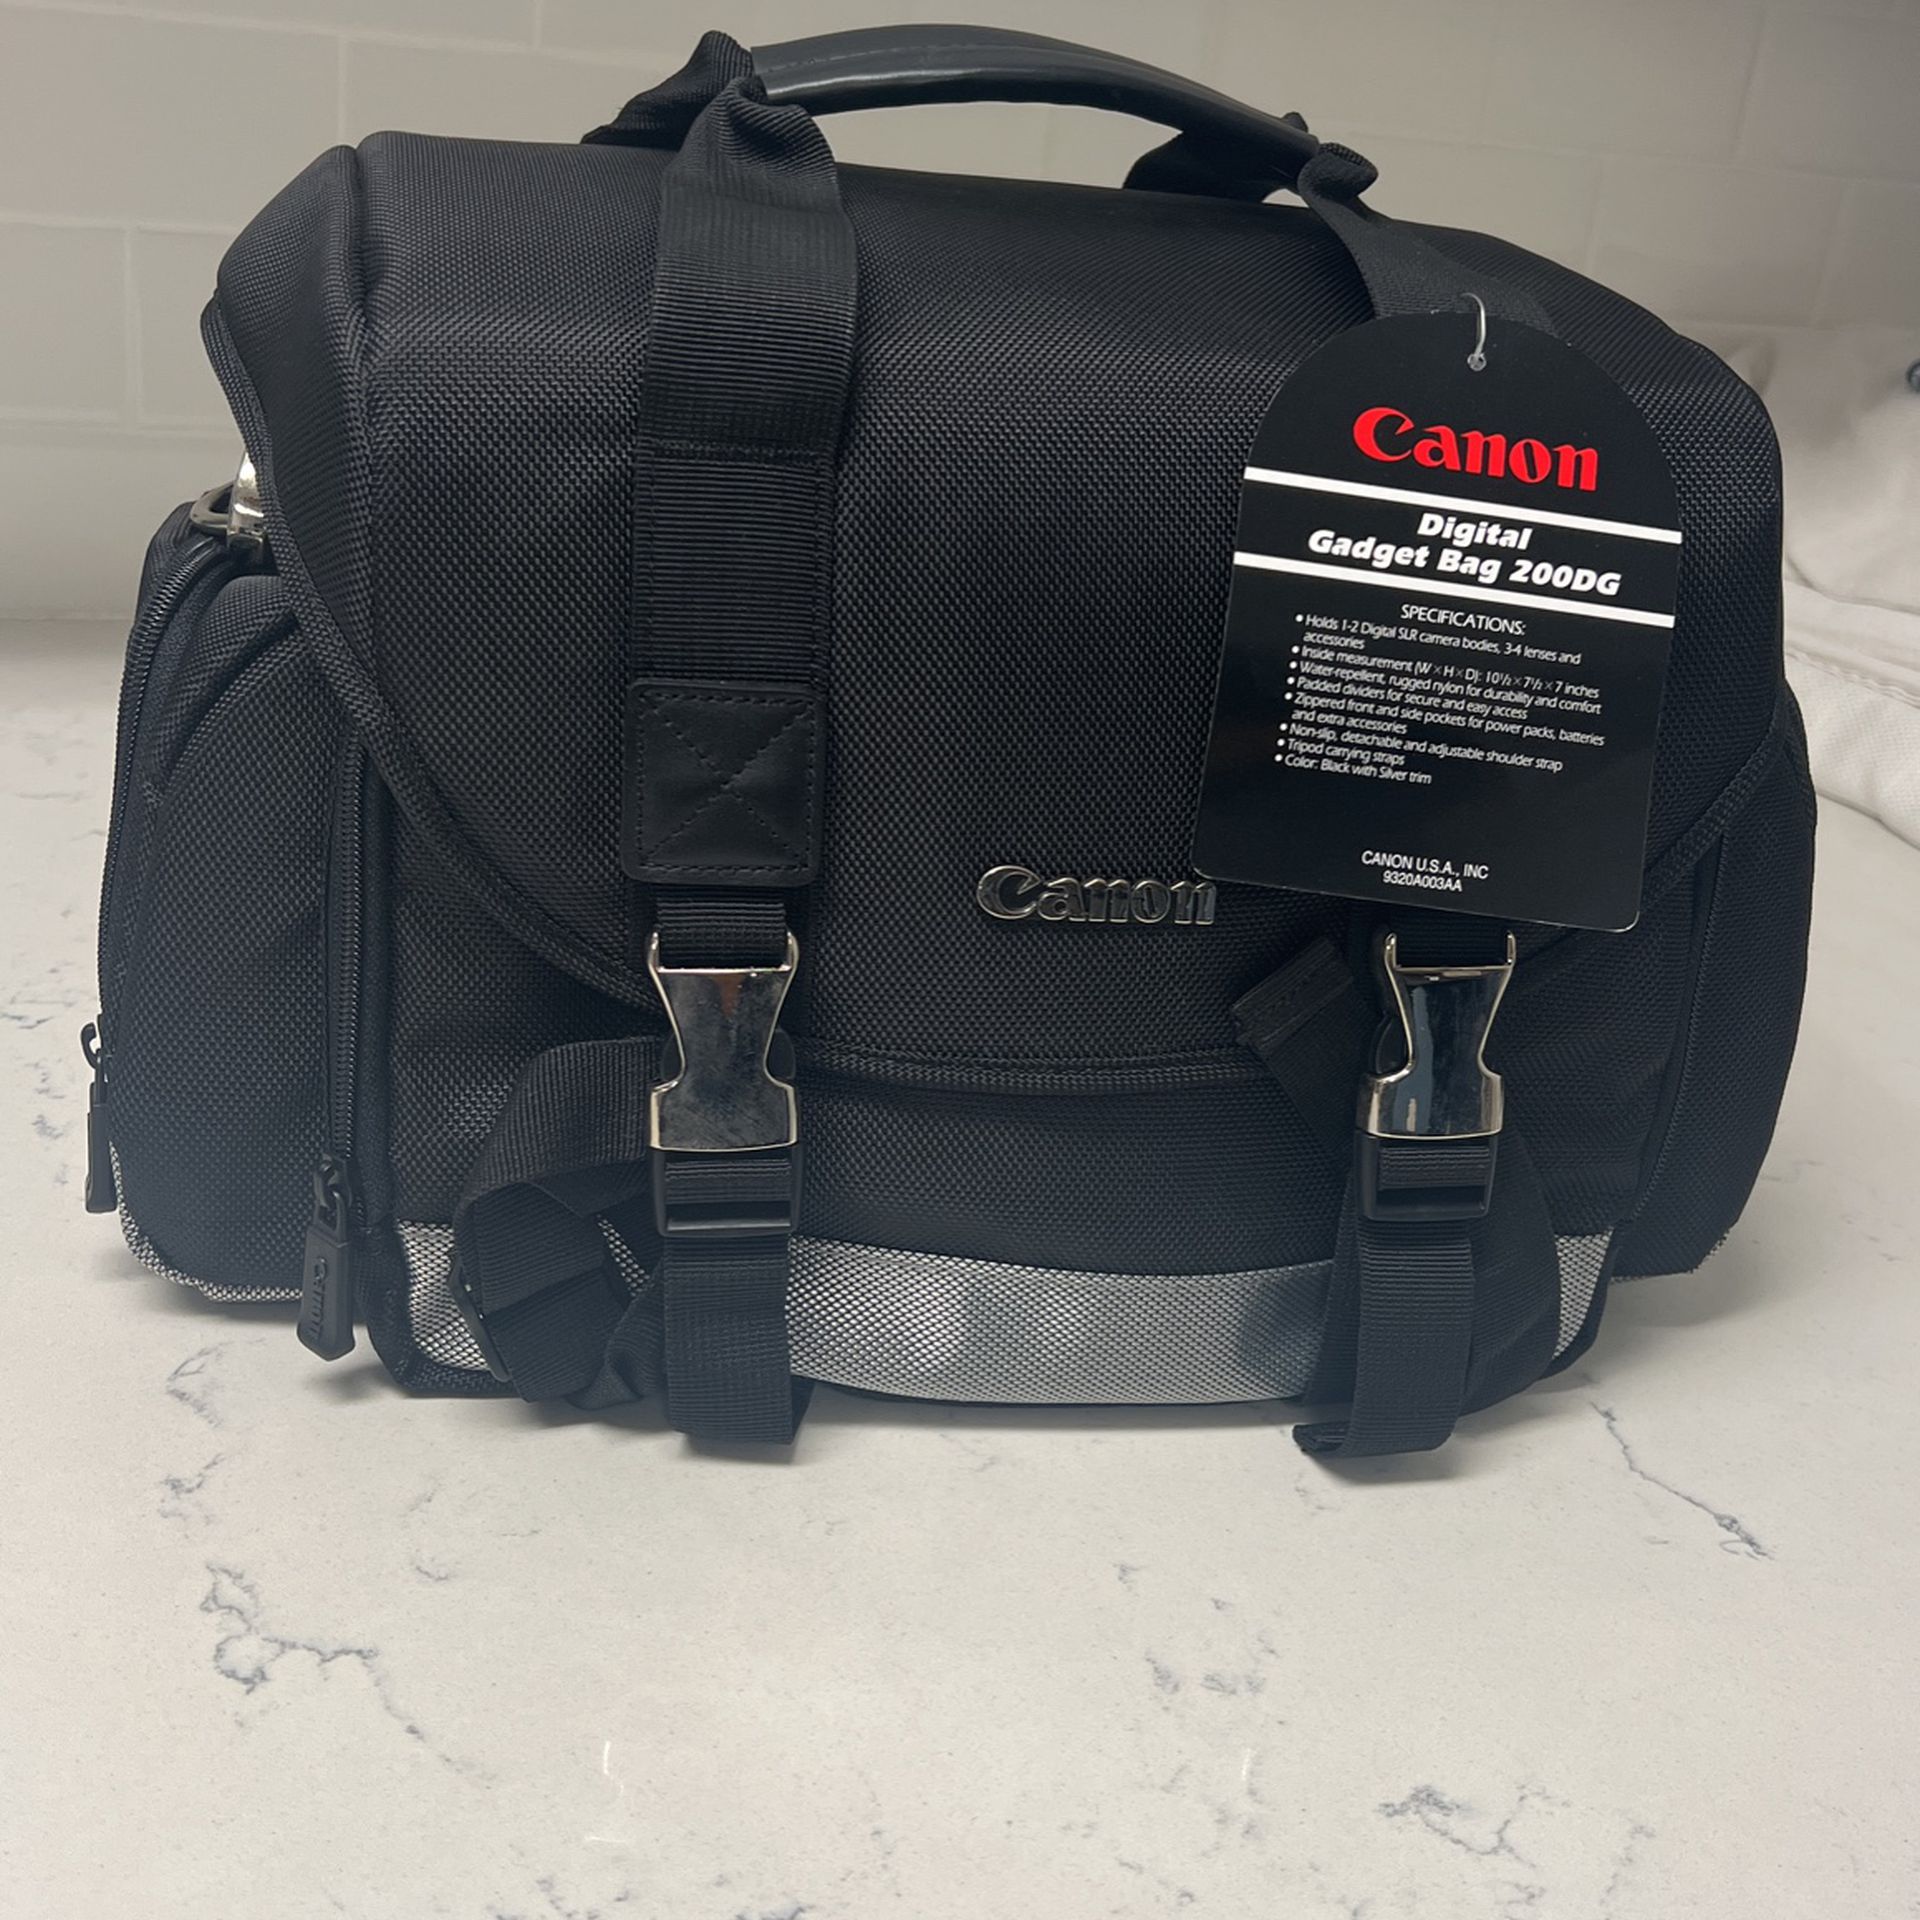 NEW - Canon Digital Gadget Bag